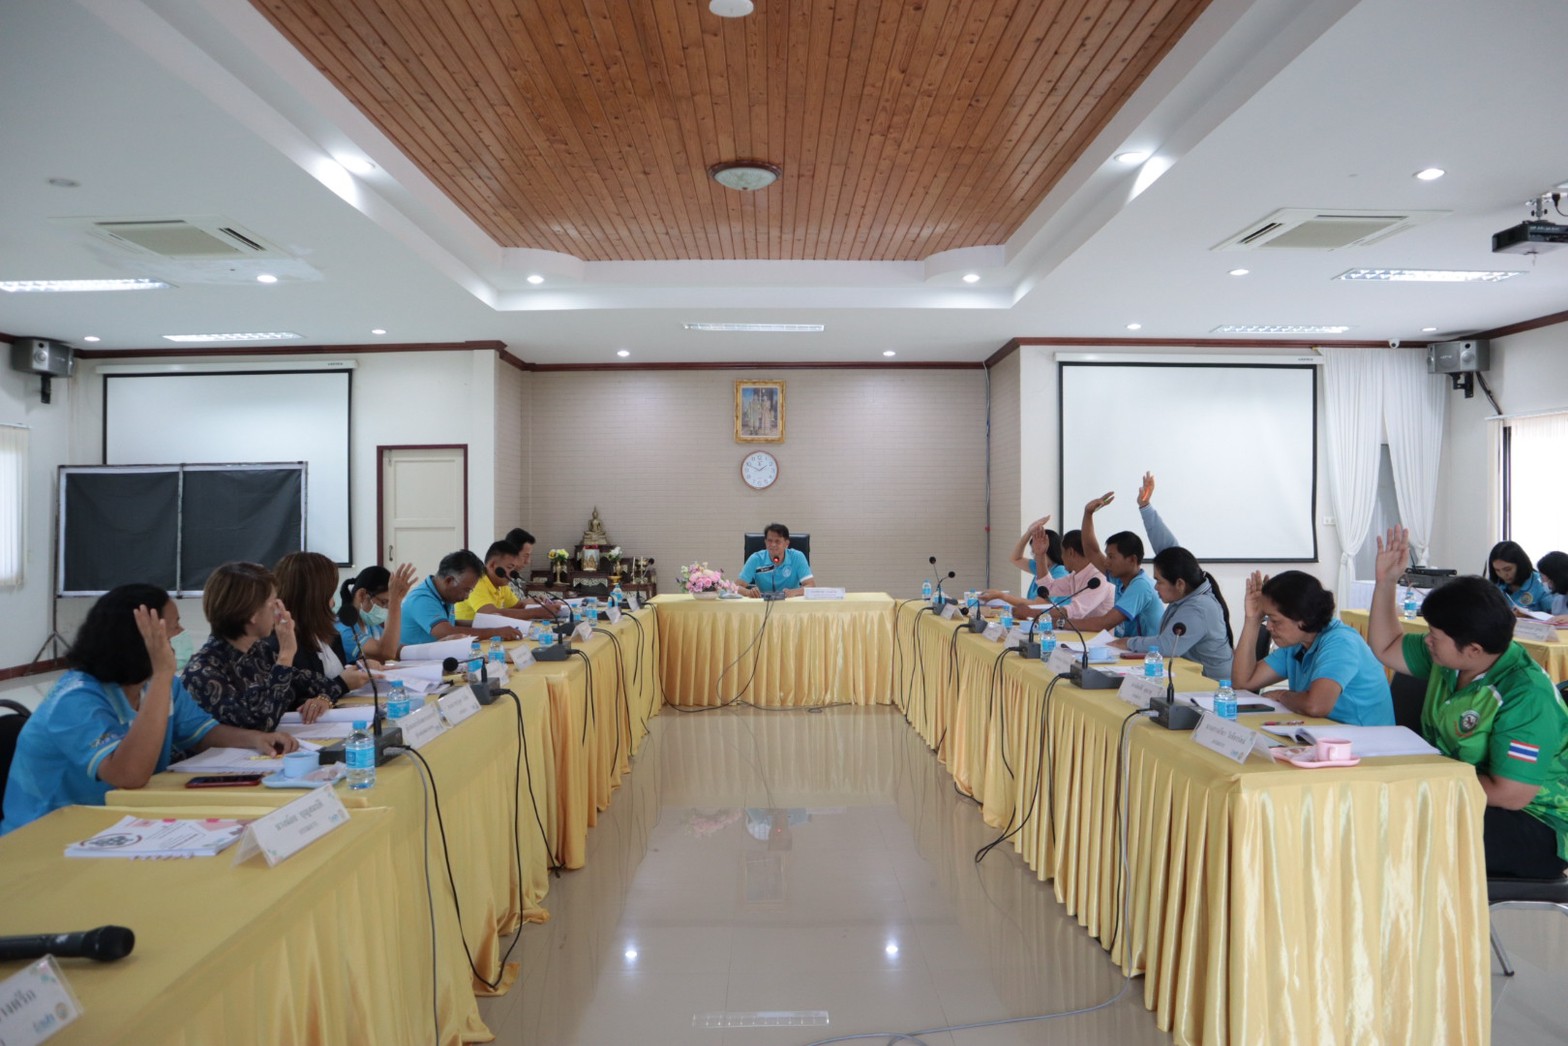 ประชุมคณะกรรมการกองทุนหลักประกันสุขภาพฯองค์การบริหารส่วนตำบลลำเลียง ครั้งที่ 3/2566